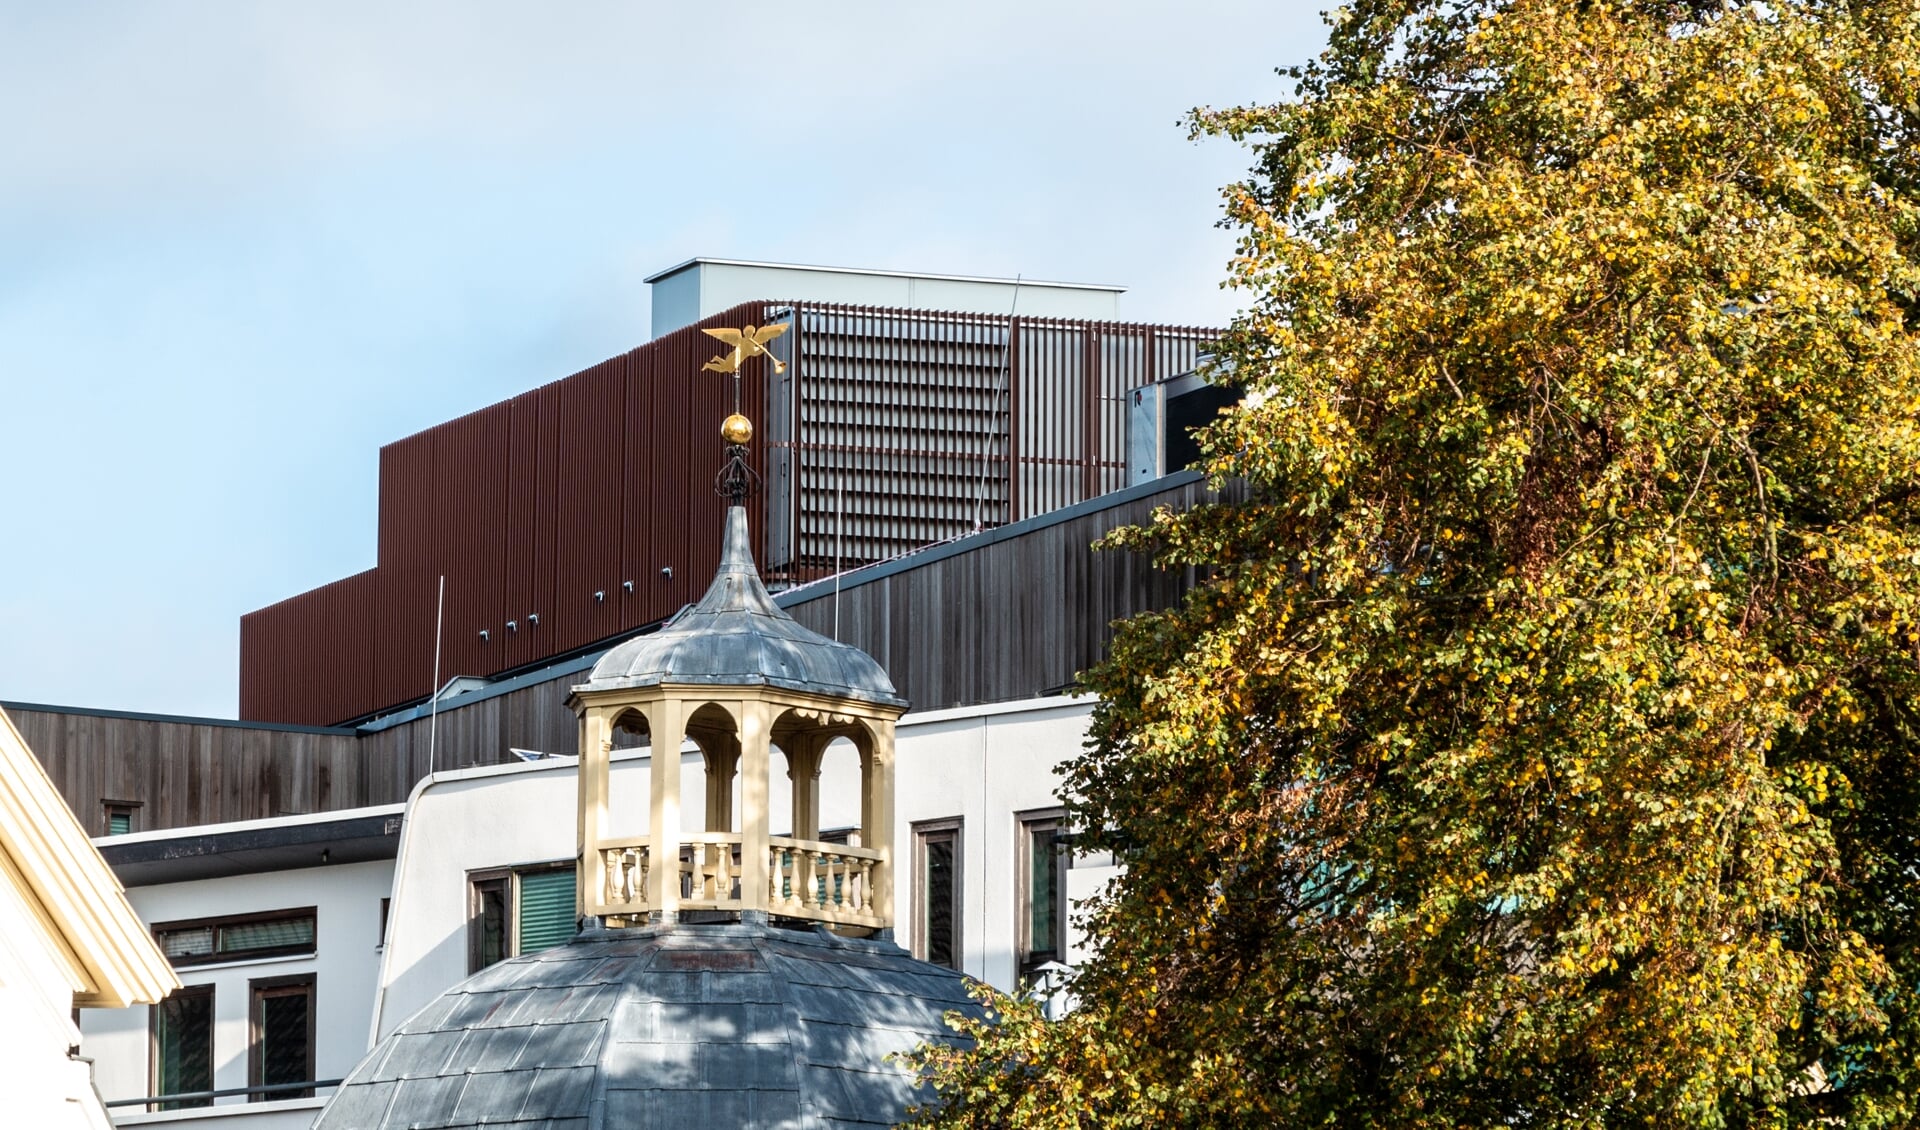 Minder reflectie en een passender omkisting op het dak van het Zutphense stadhuis. Foto: Henk Derksen